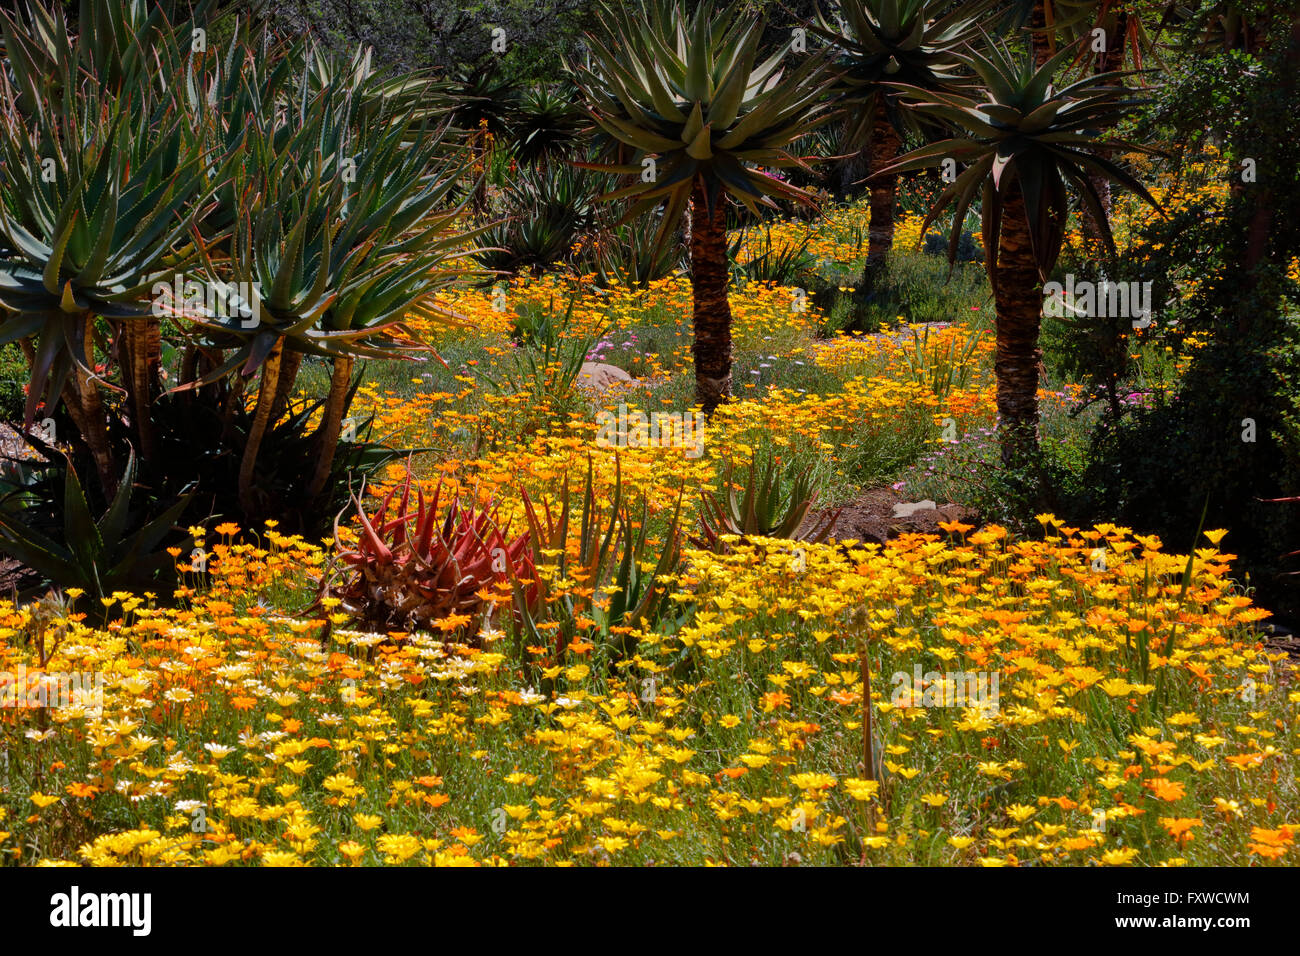 La floraison printanière en Californie à Taft Botanical Gardens, Ojai CA Banque D'Images